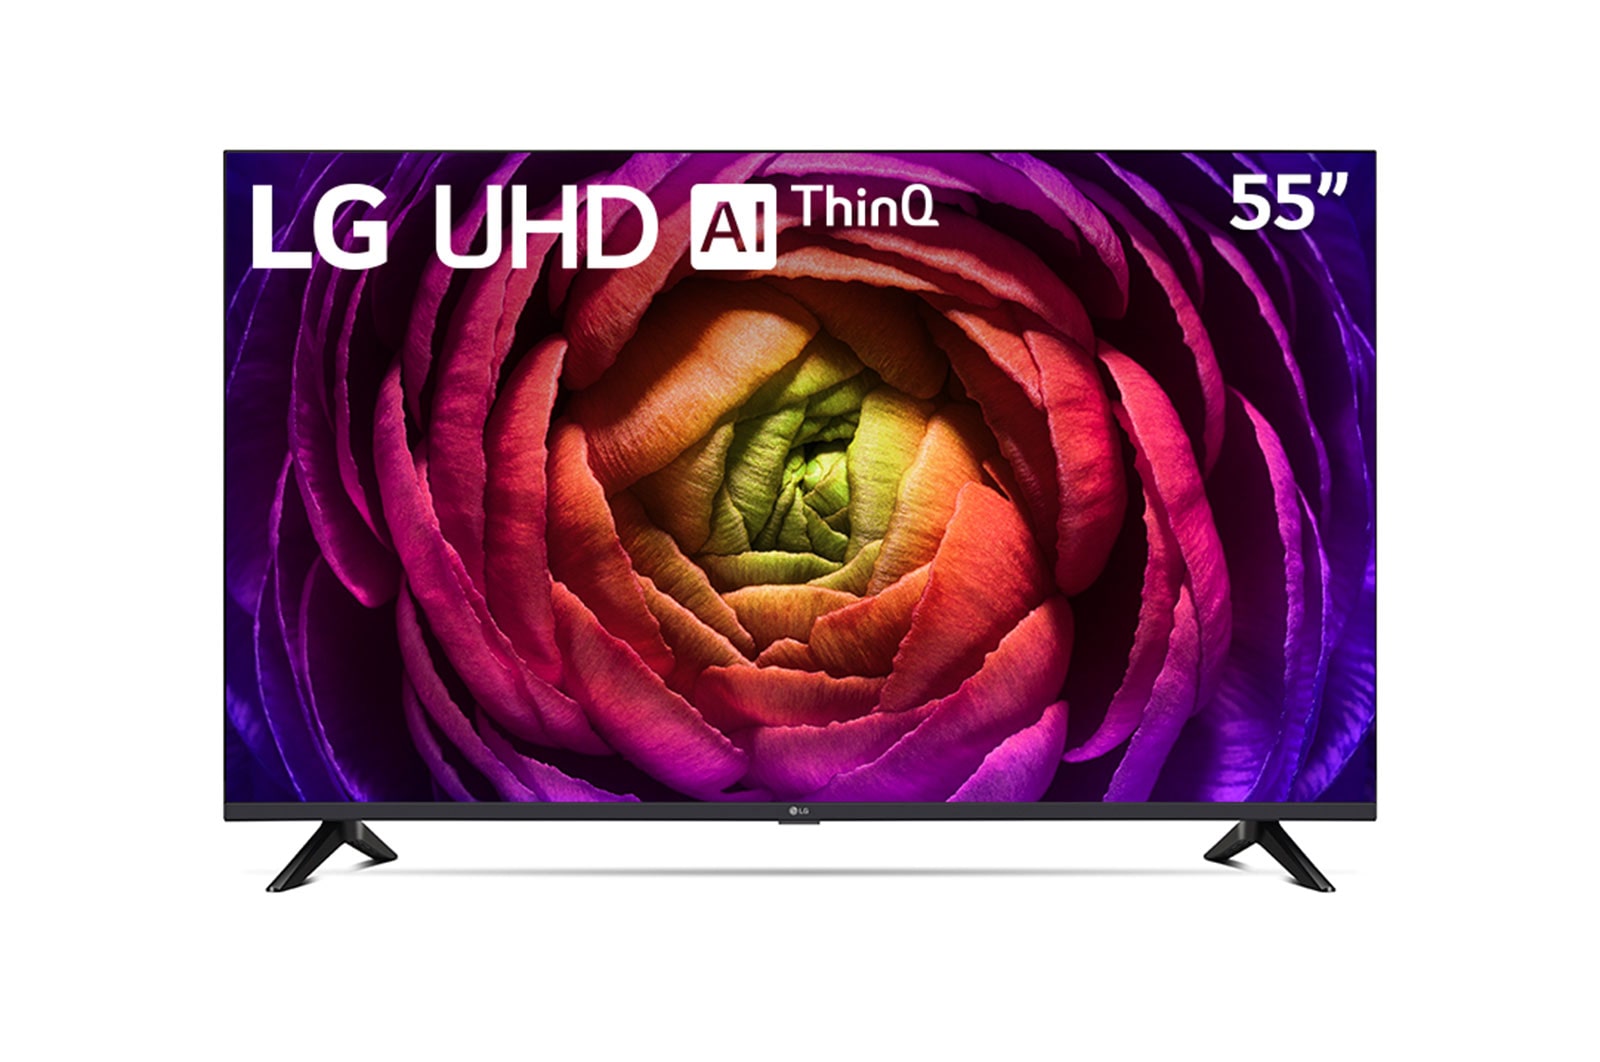 LG Televisor LG 55"  UHD |4K |Procesador IA α5 |Smart TV |Acceso directo a tus contenidos favoritos| Alerta deportes , 55UR7300PSA